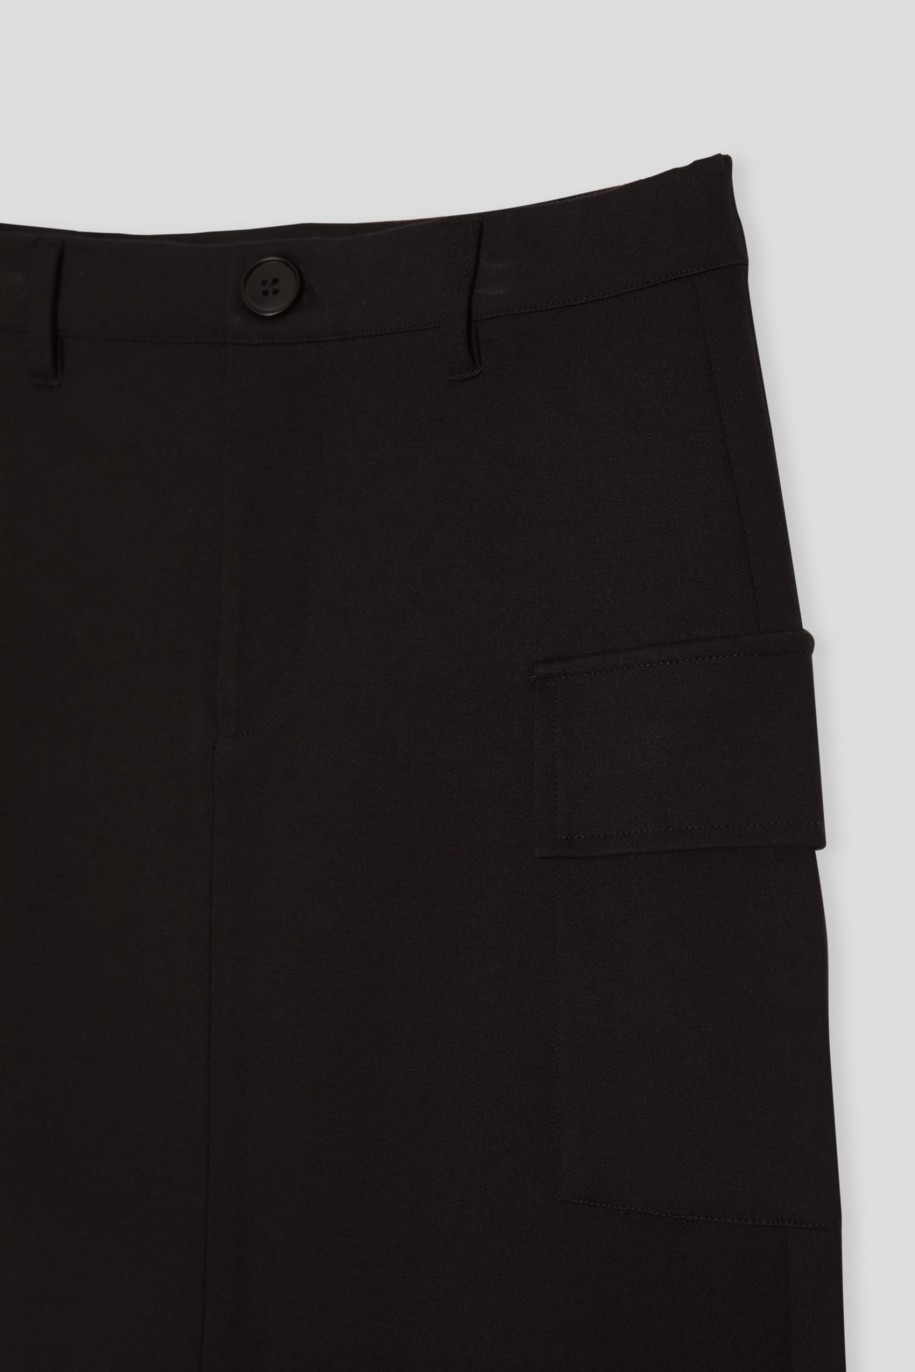 Czarna spódnica mini z przestrzennymi kieszeniami - 45796